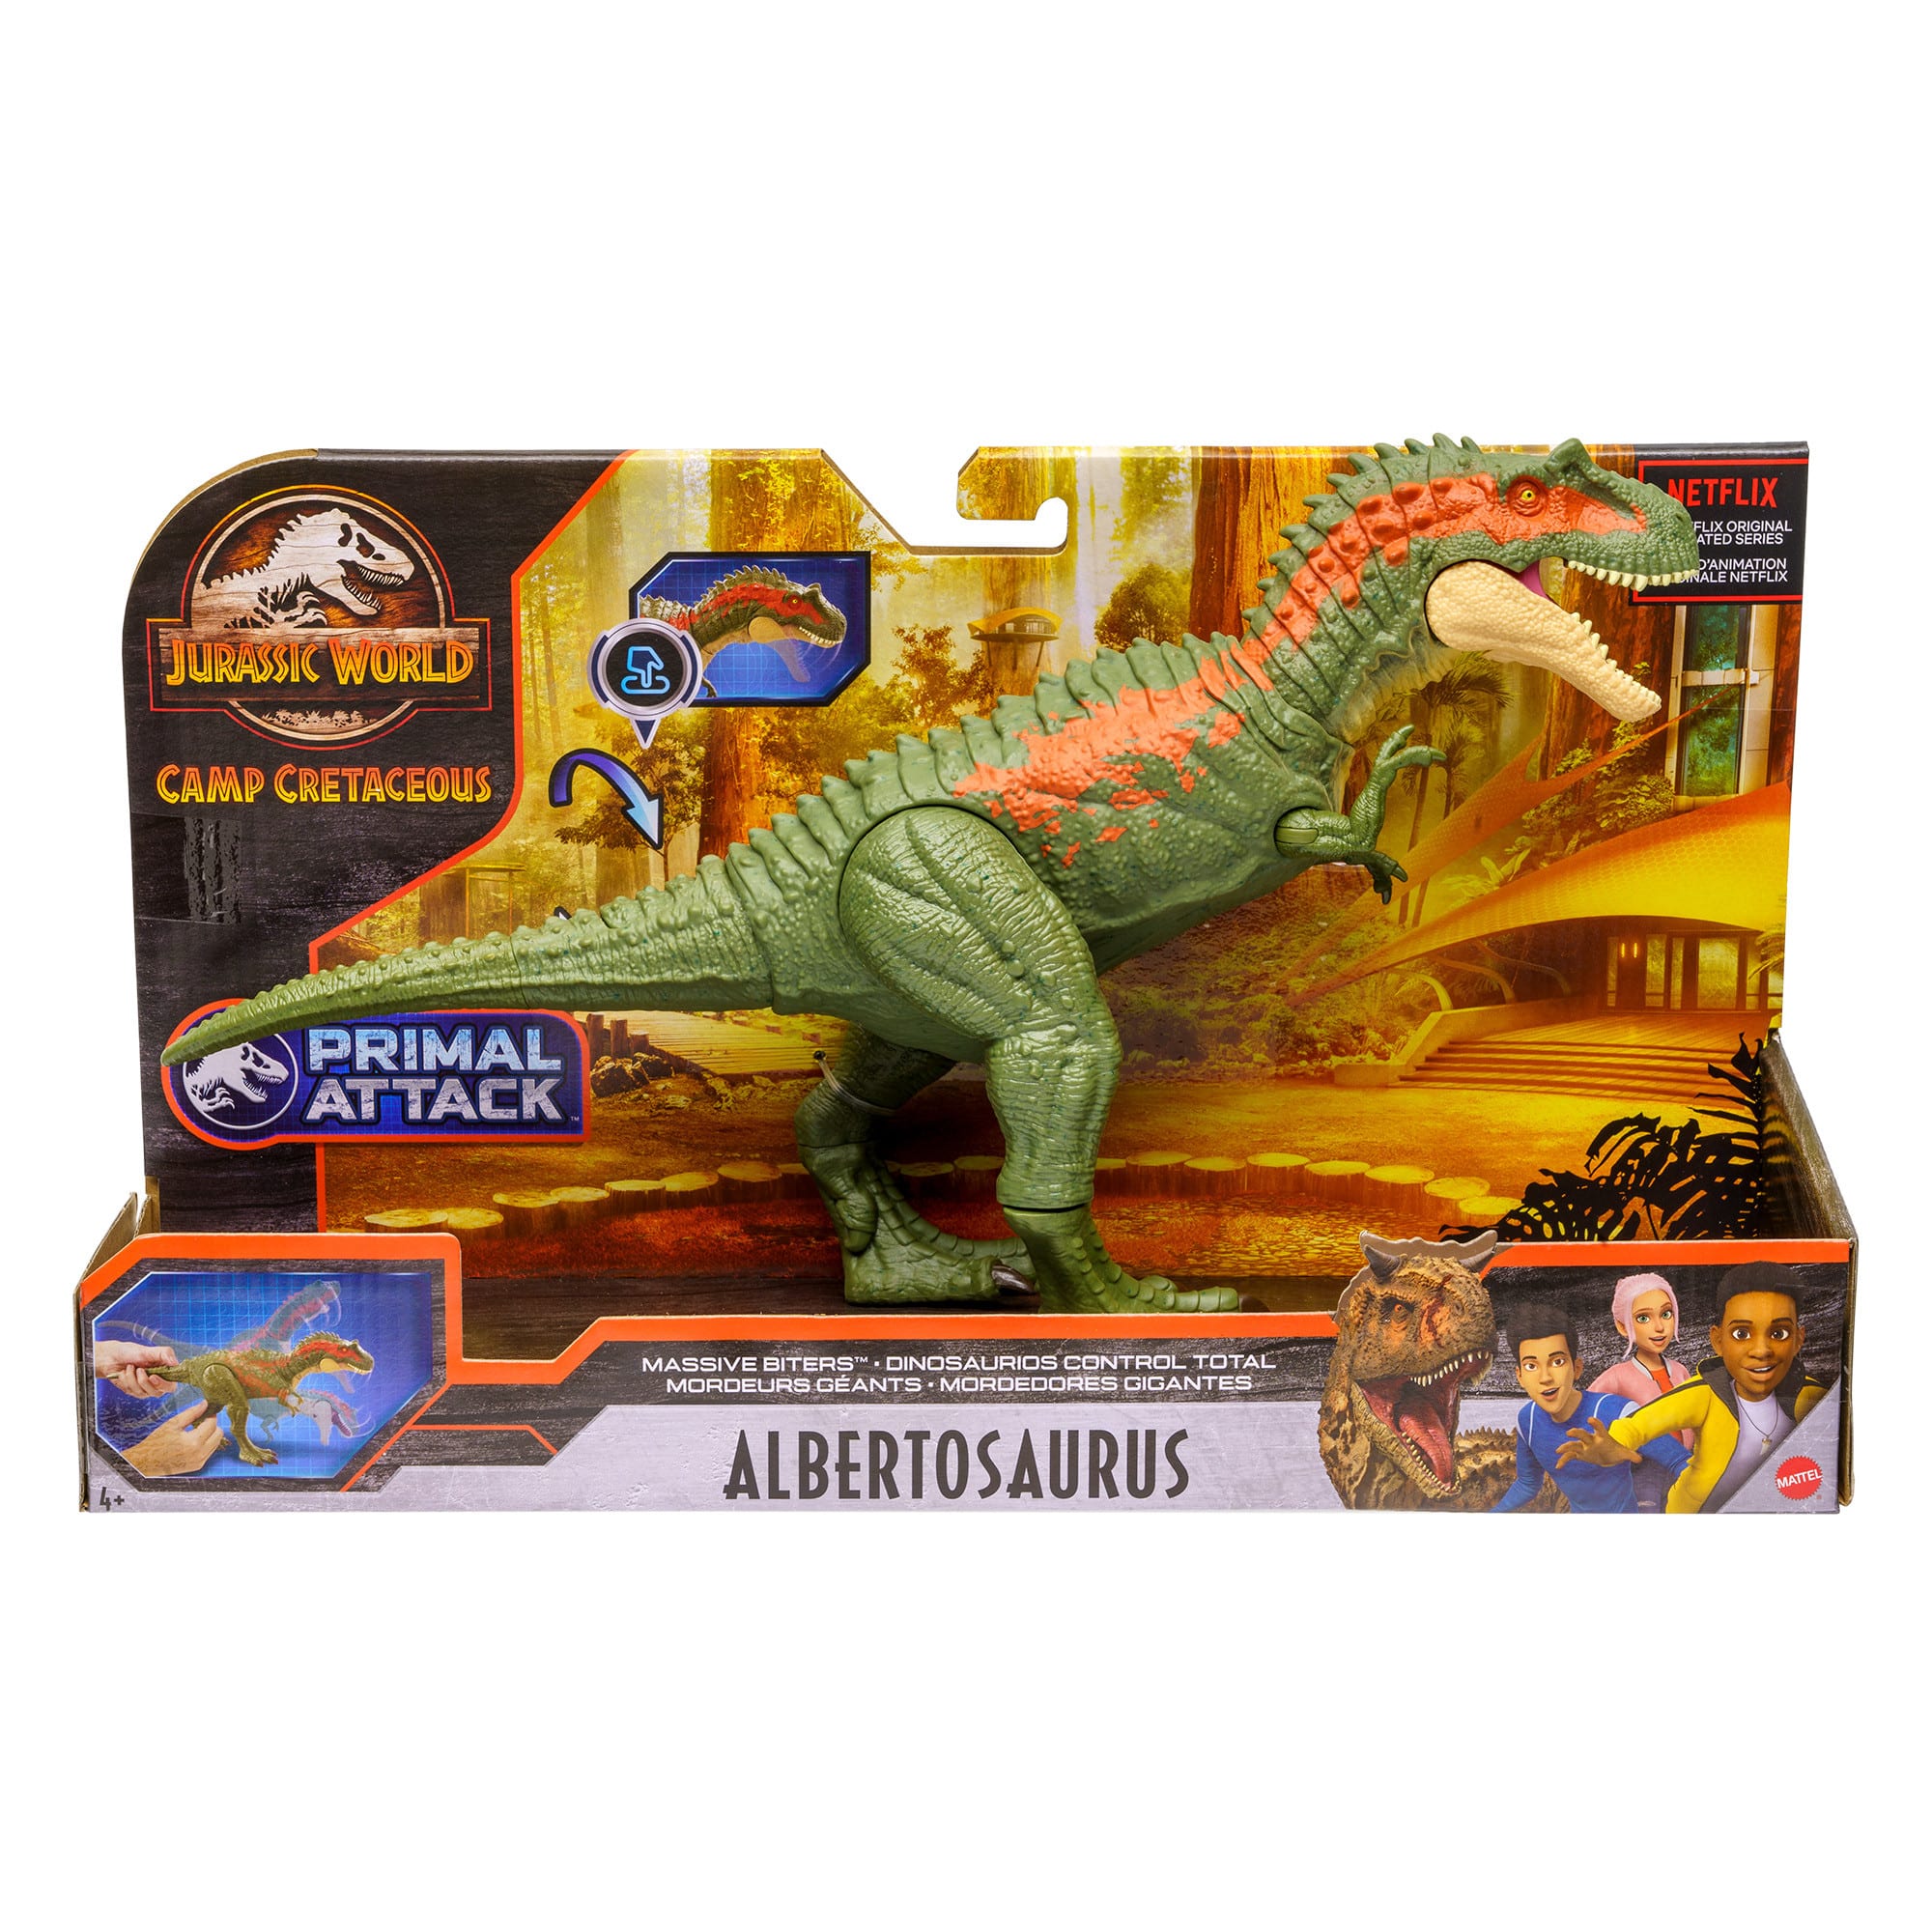 Jurassic World - Massive Biter - Albertosaurus